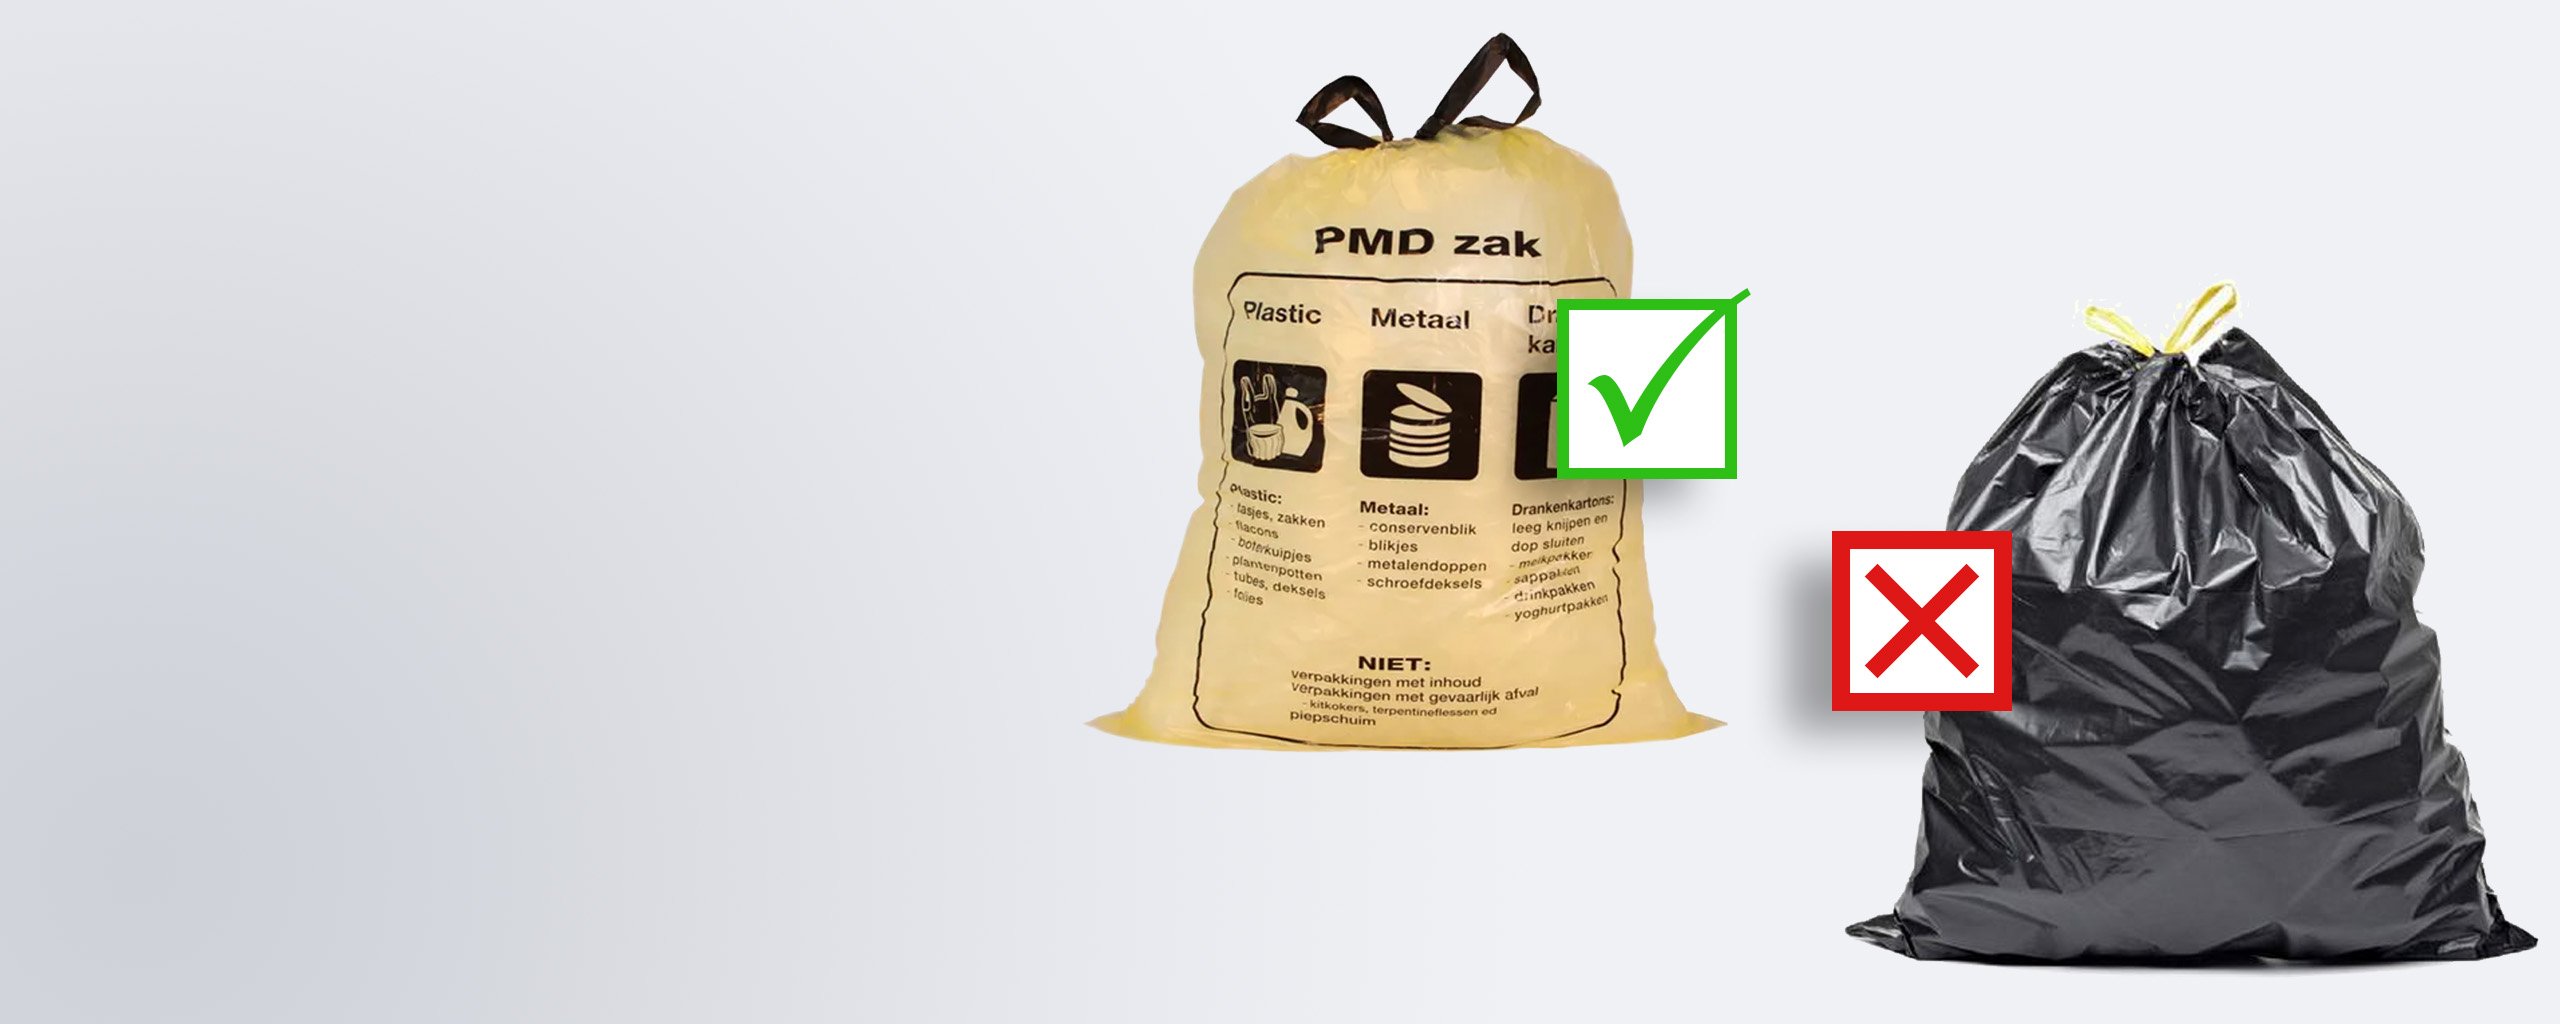 PMD hoort in een doorzichtige zak. Op de afbeelding staat een groen vinkje bij de doorzichtige zak en een rood kruis bij de zwarte ondoorzichtige zak